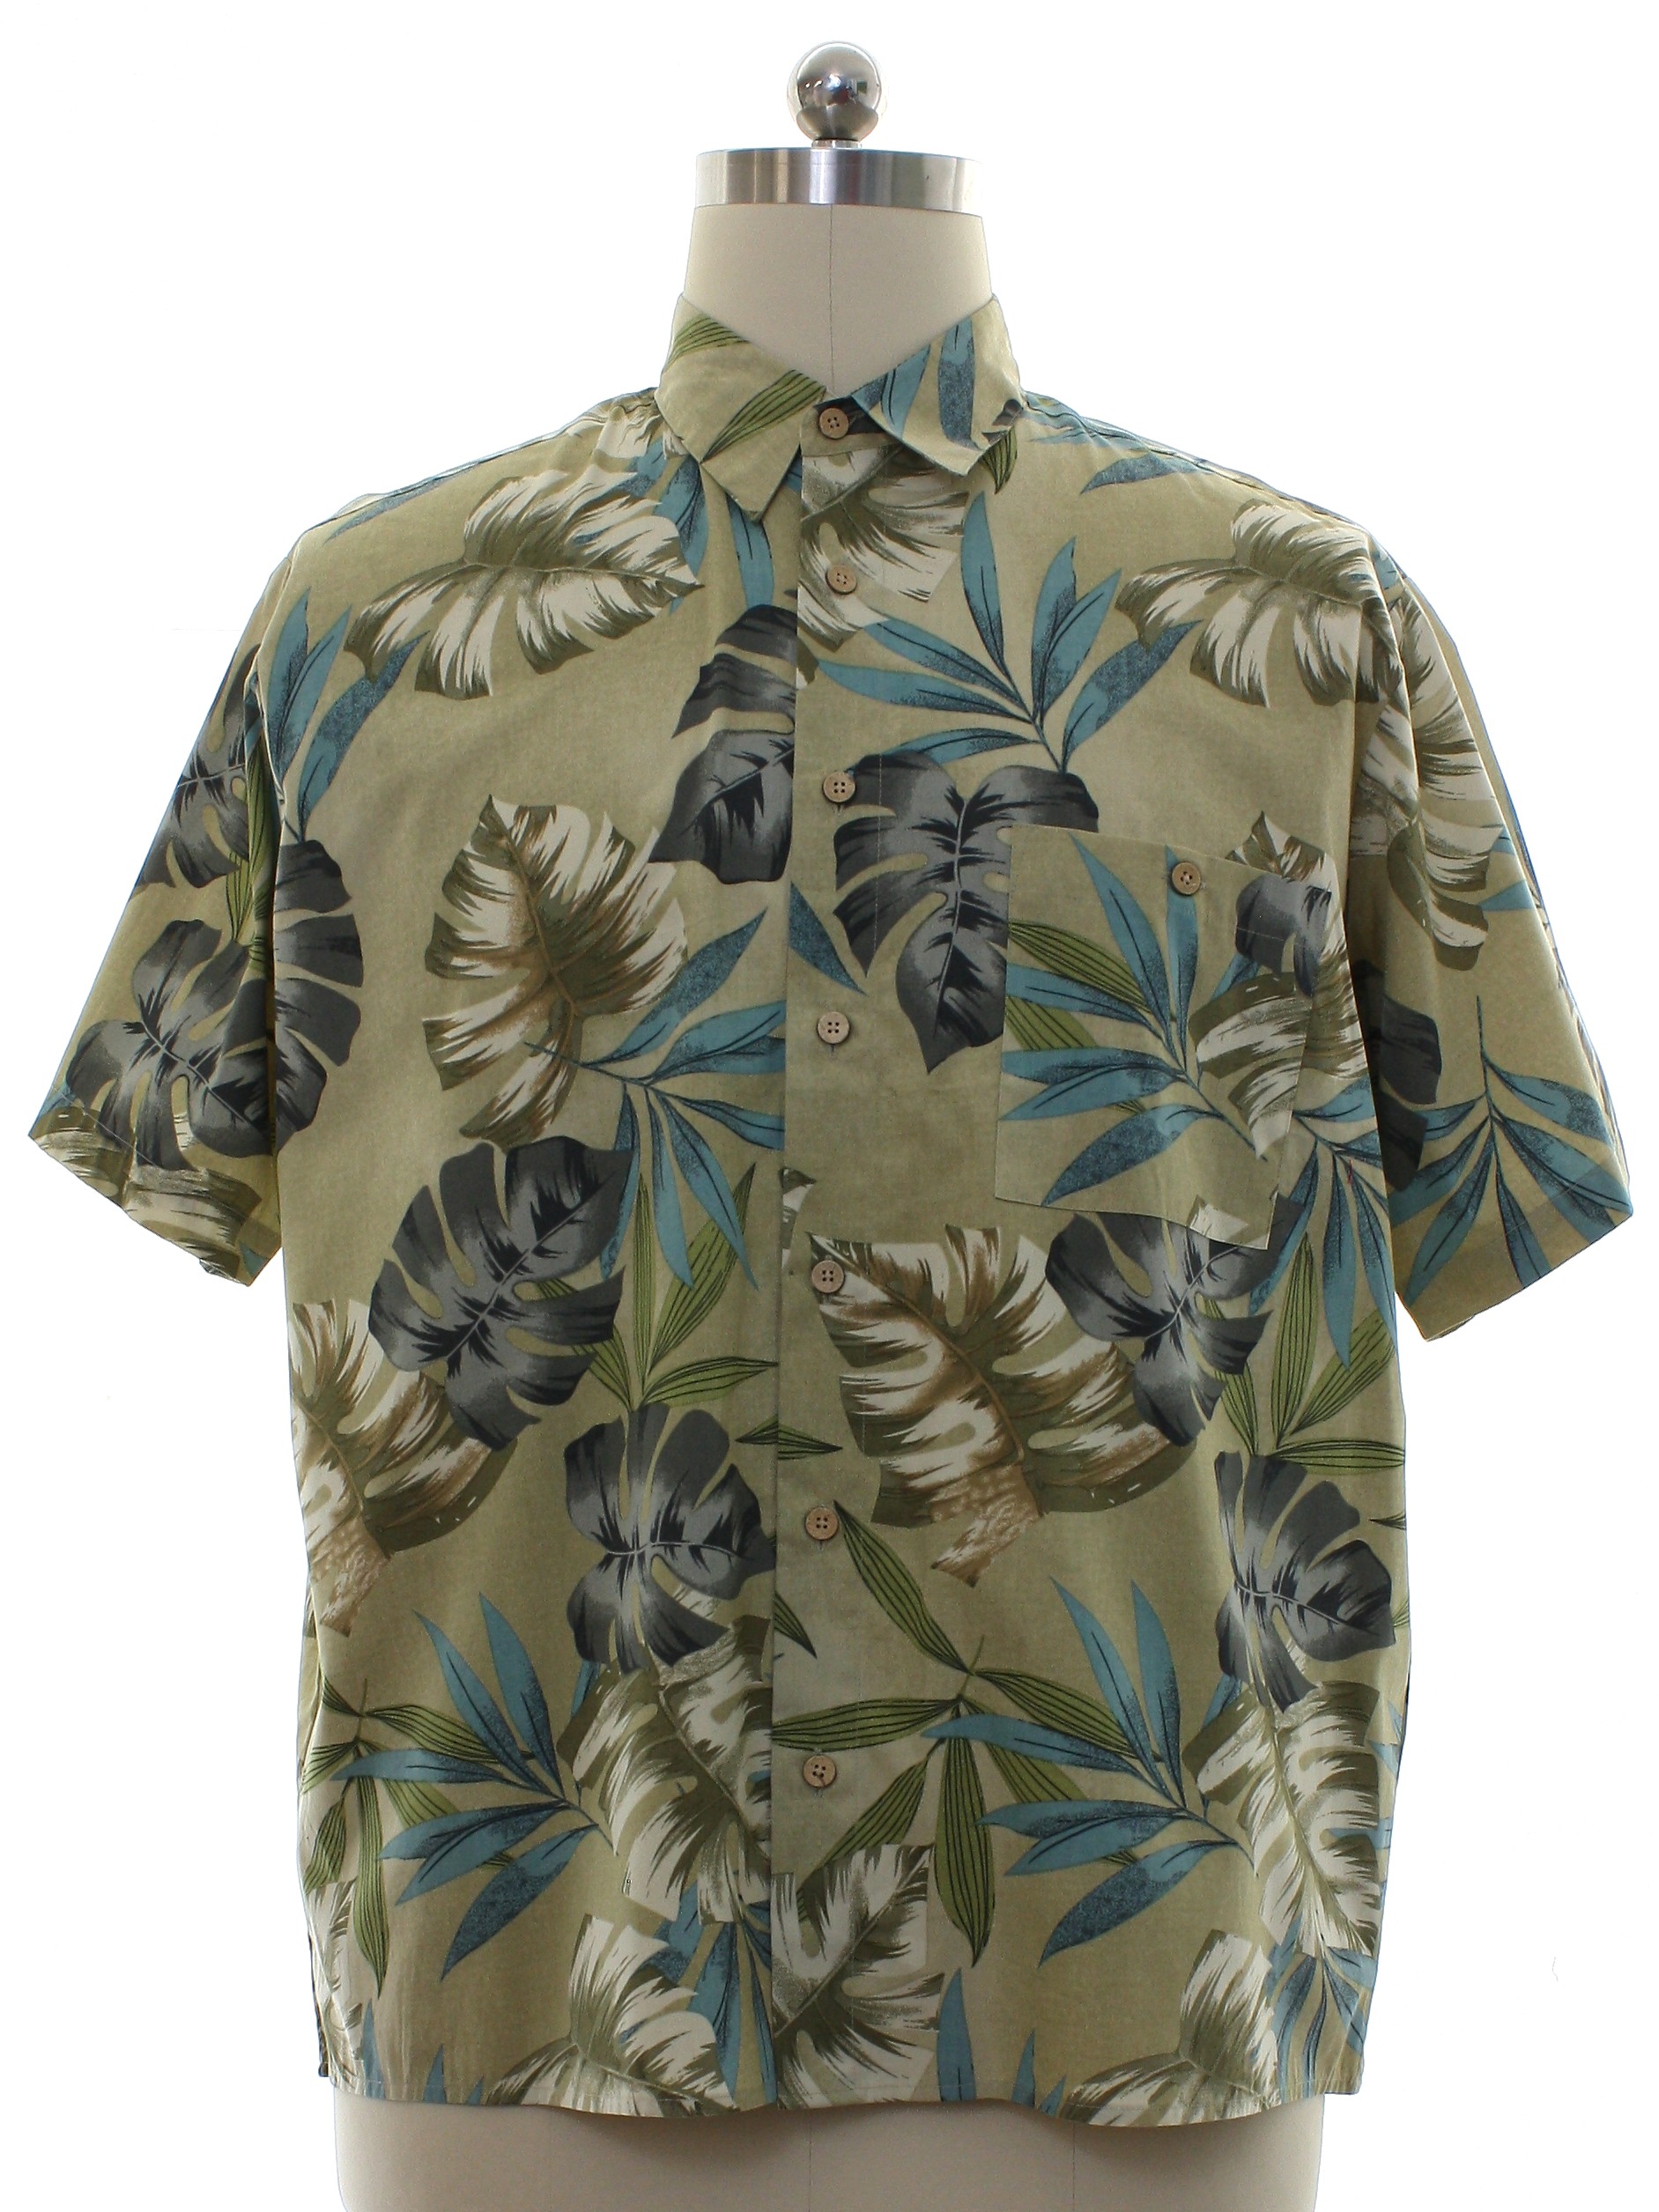 Retro 90s Hawaiian Shirt (Natural Issue) : 90s -Natural Issue- Mens tan ...